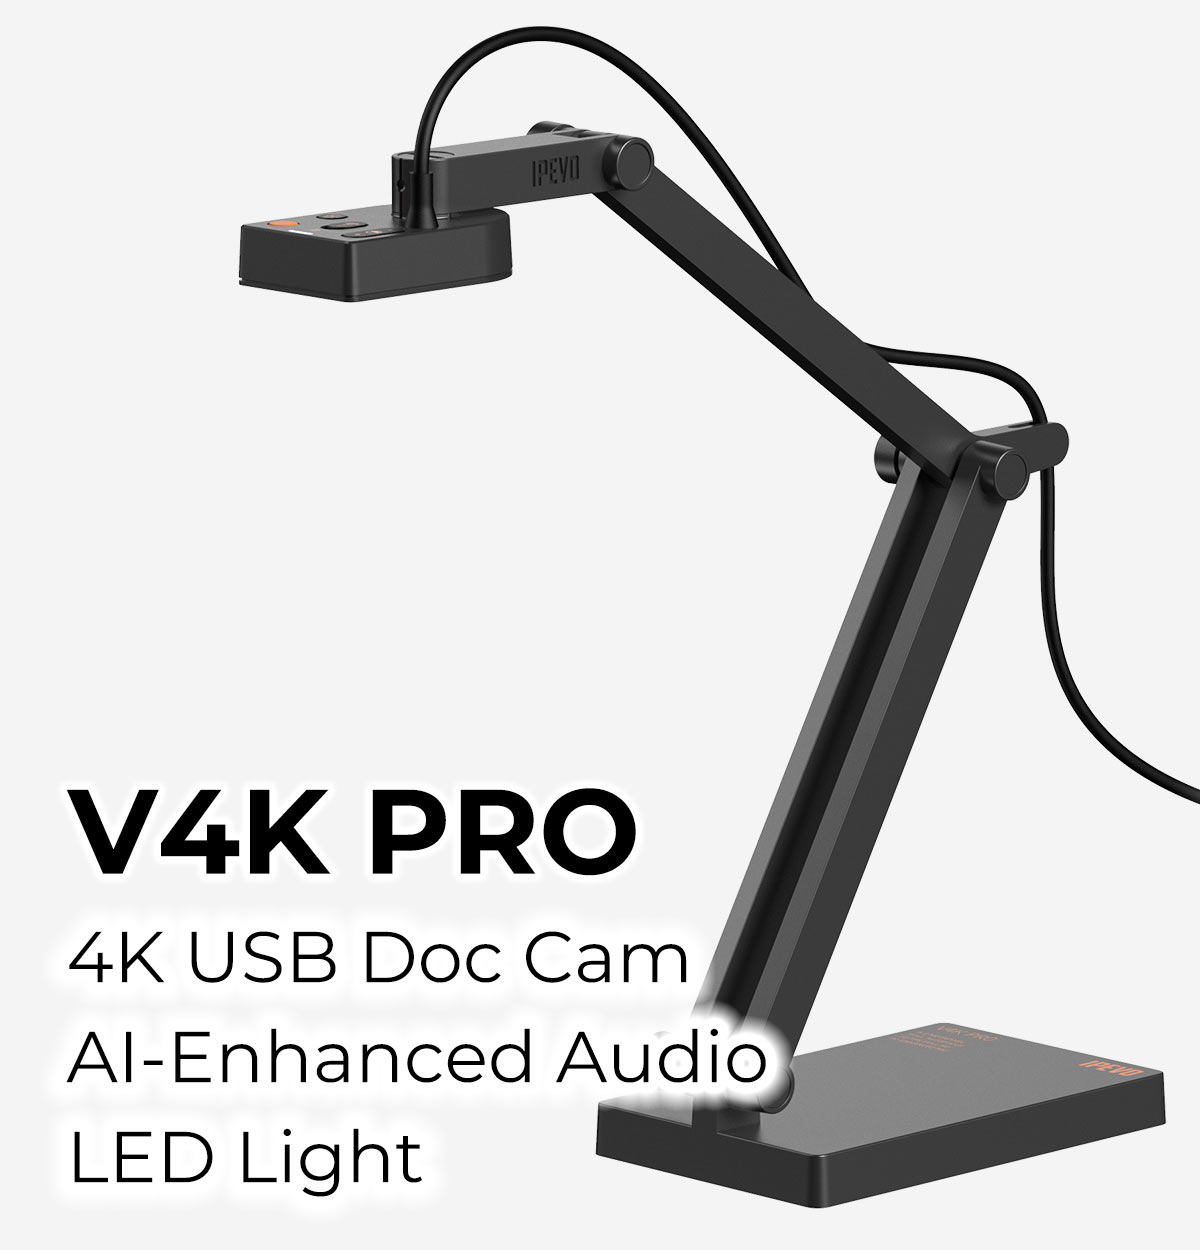 V4K Pro 4K USB Doc Cam AI-Enhanced Audio LED Light